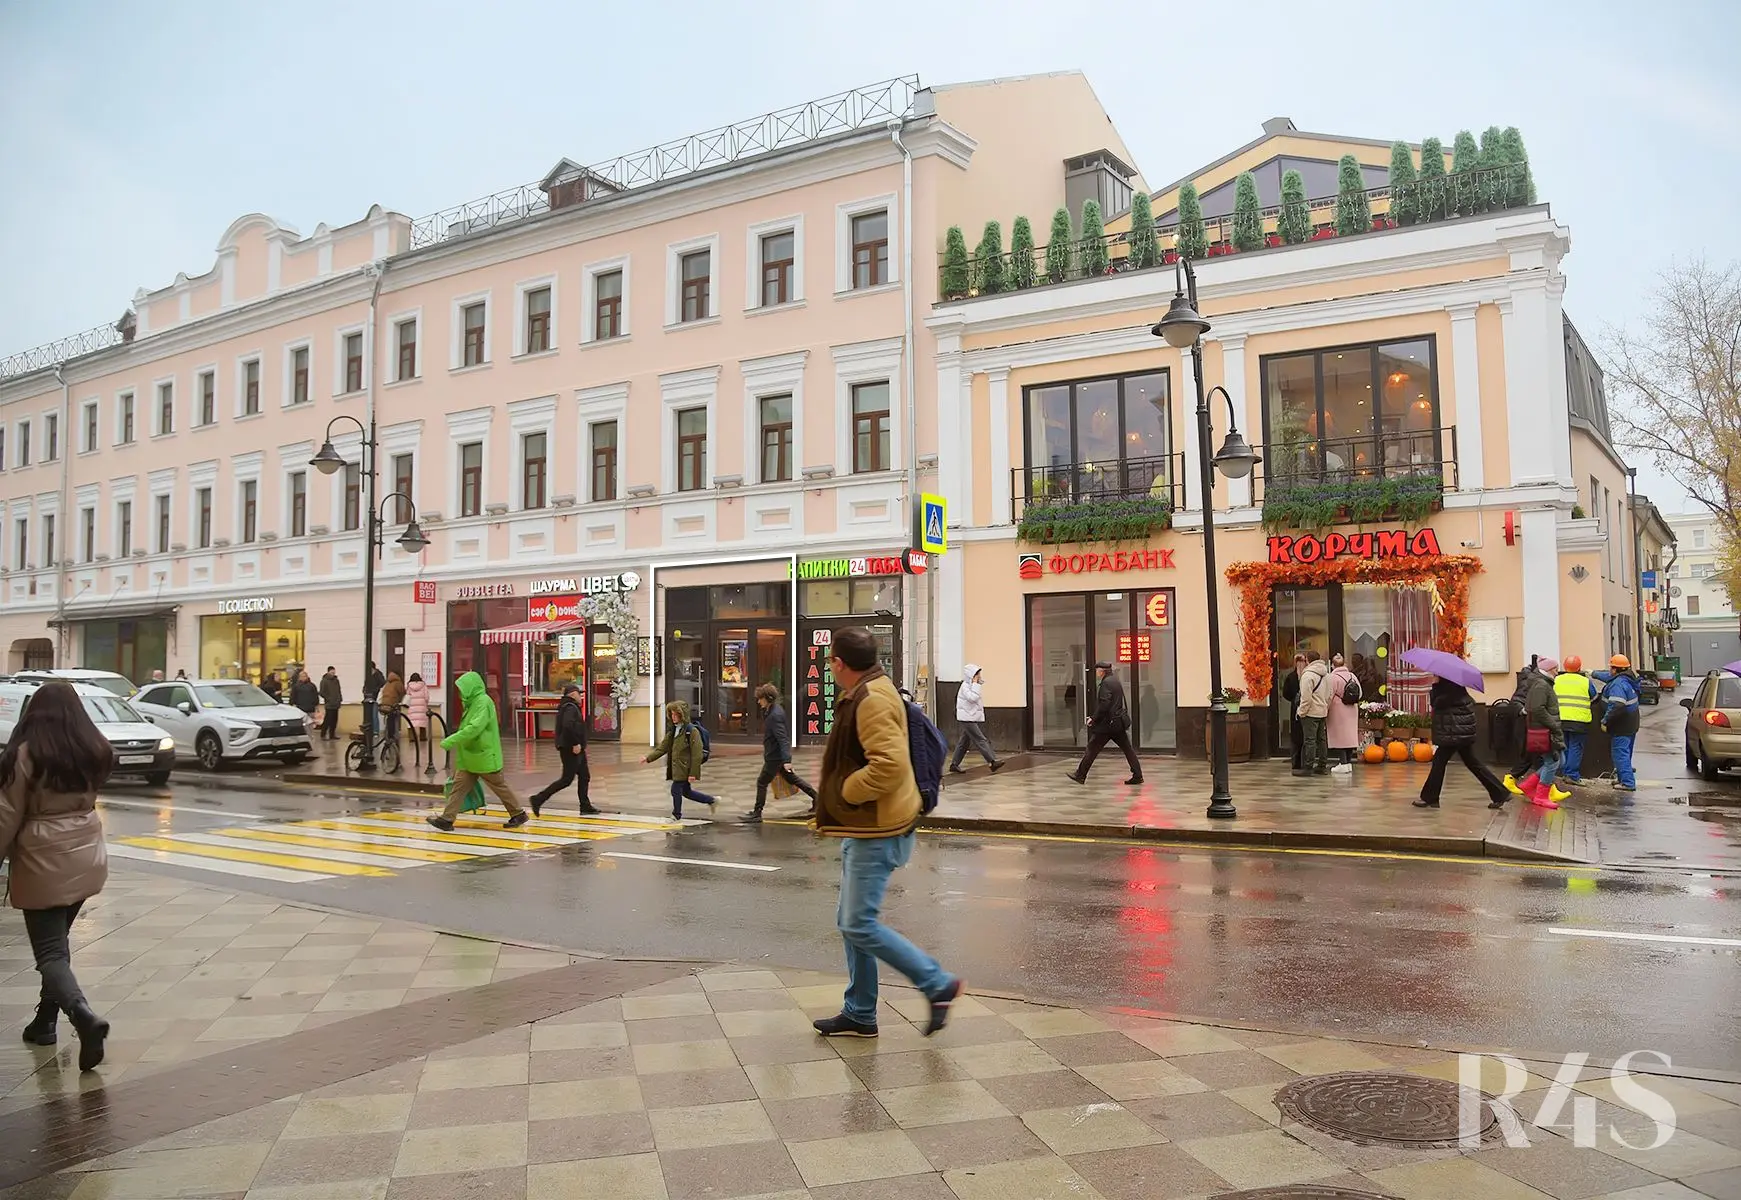 Аренда торгового помещения площадью 78.2 м2 в Москве: Пятницкая улица, 16с1 R4S | Realty4Sale